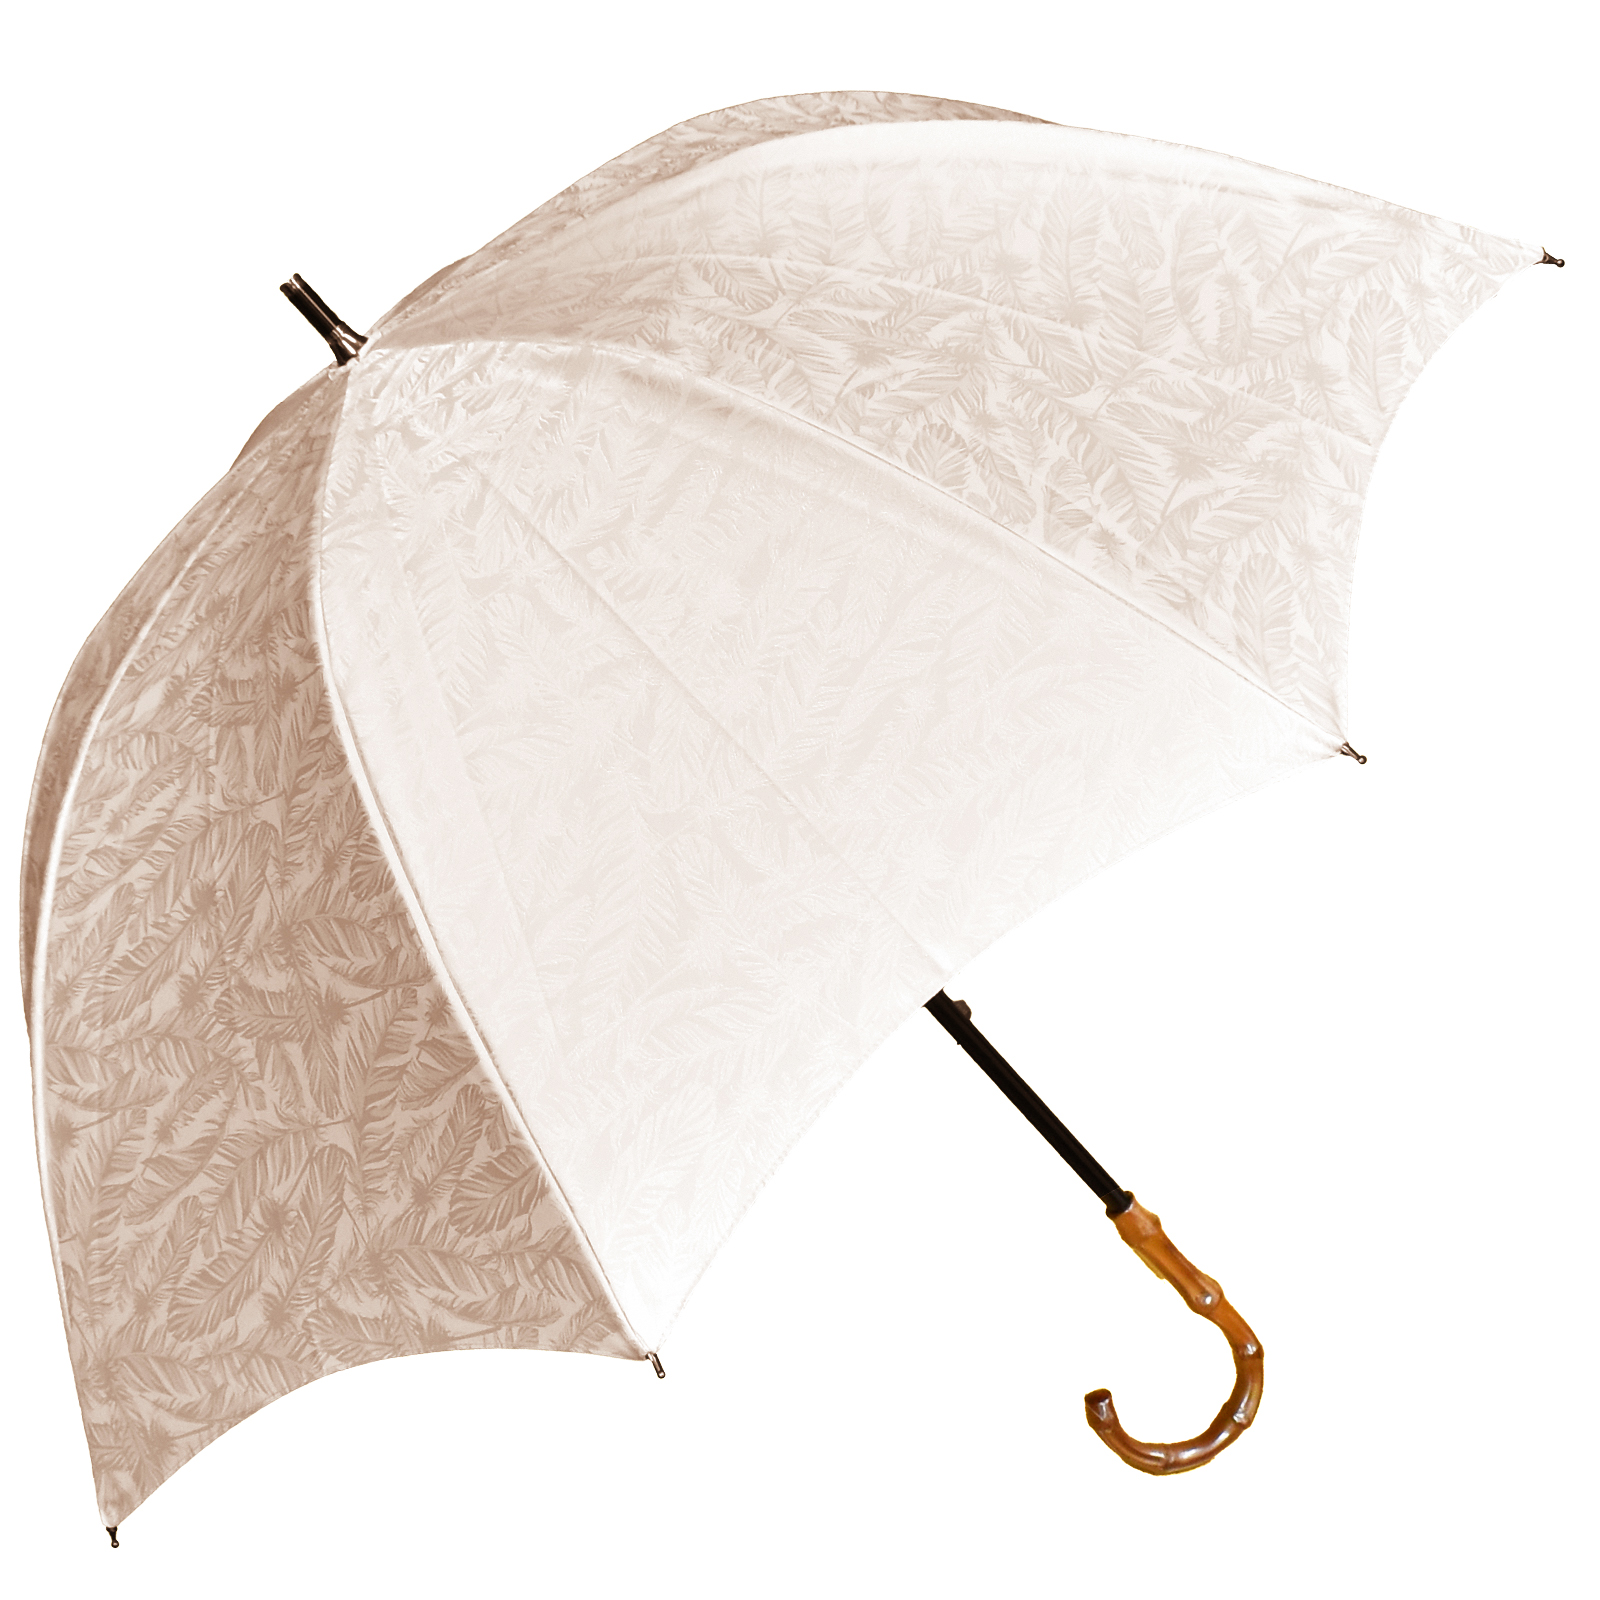 日傘 完全遮光 長傘 uv 晴雨兼用 1級遮光 遮熱 涼しい おしゃれ 軽量 完全遮光 プレーン フ...